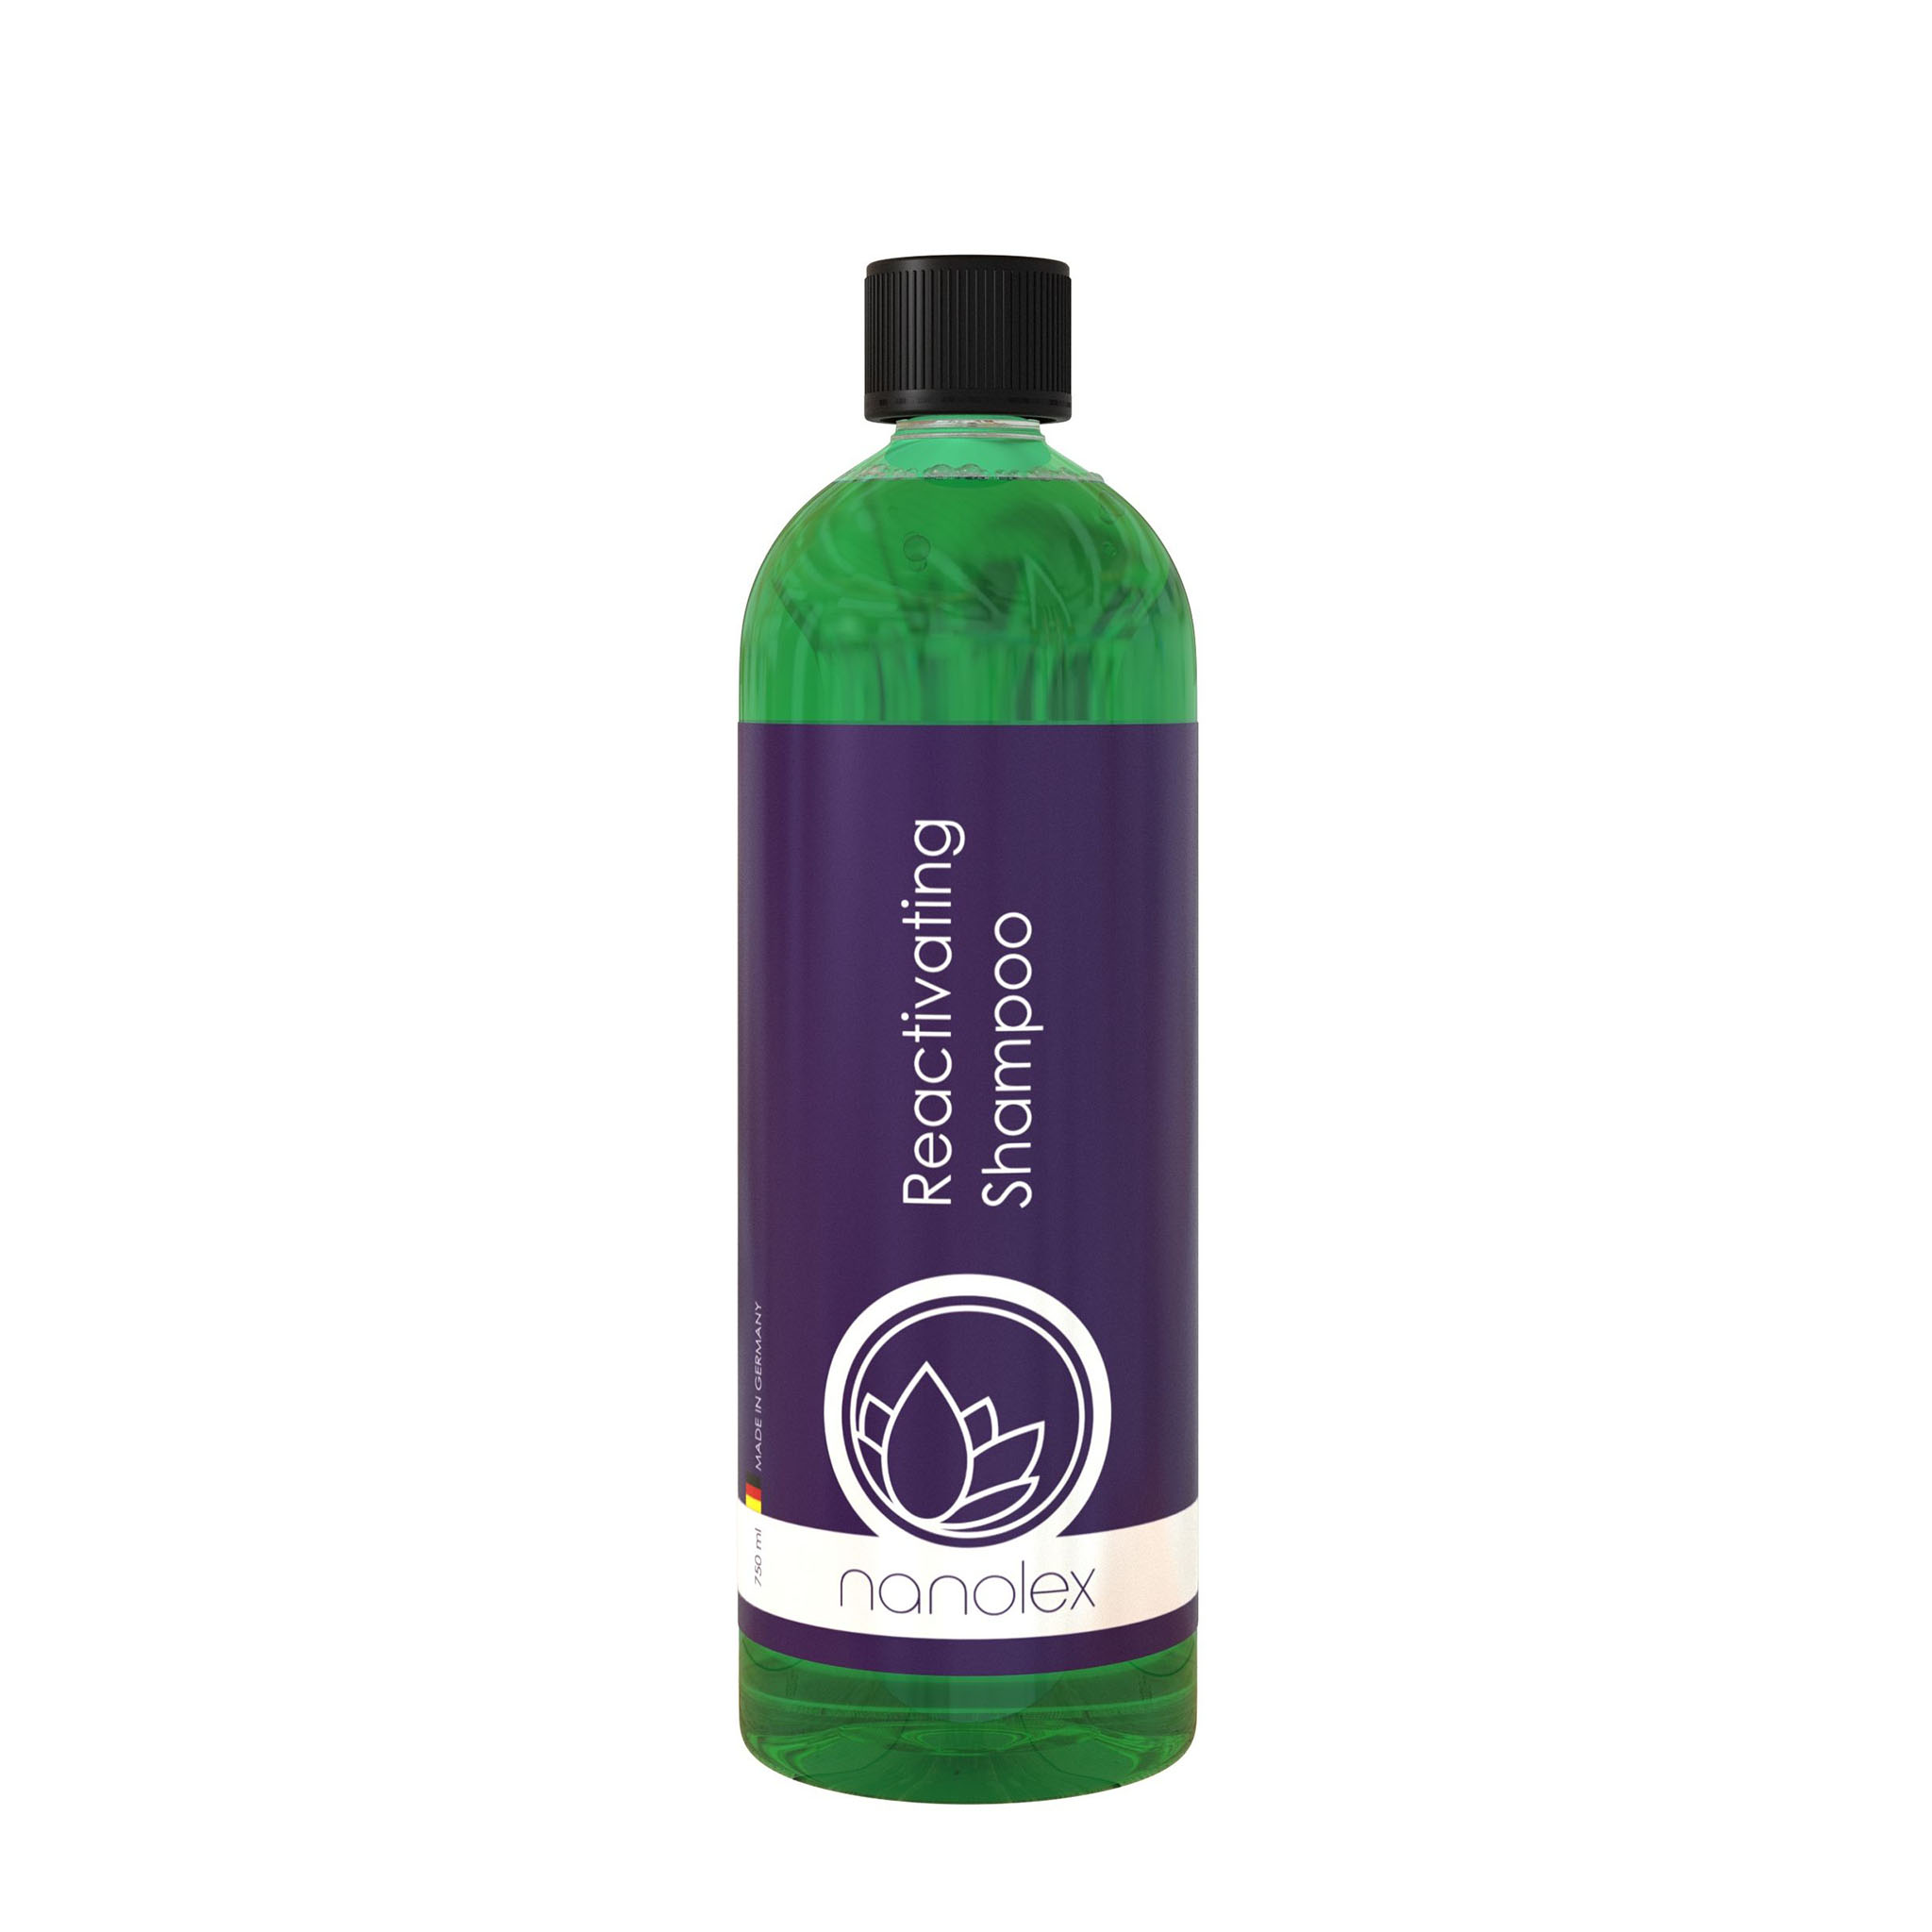 Bilschampo Nanolex Reactivating Shampoo, 5000 ml